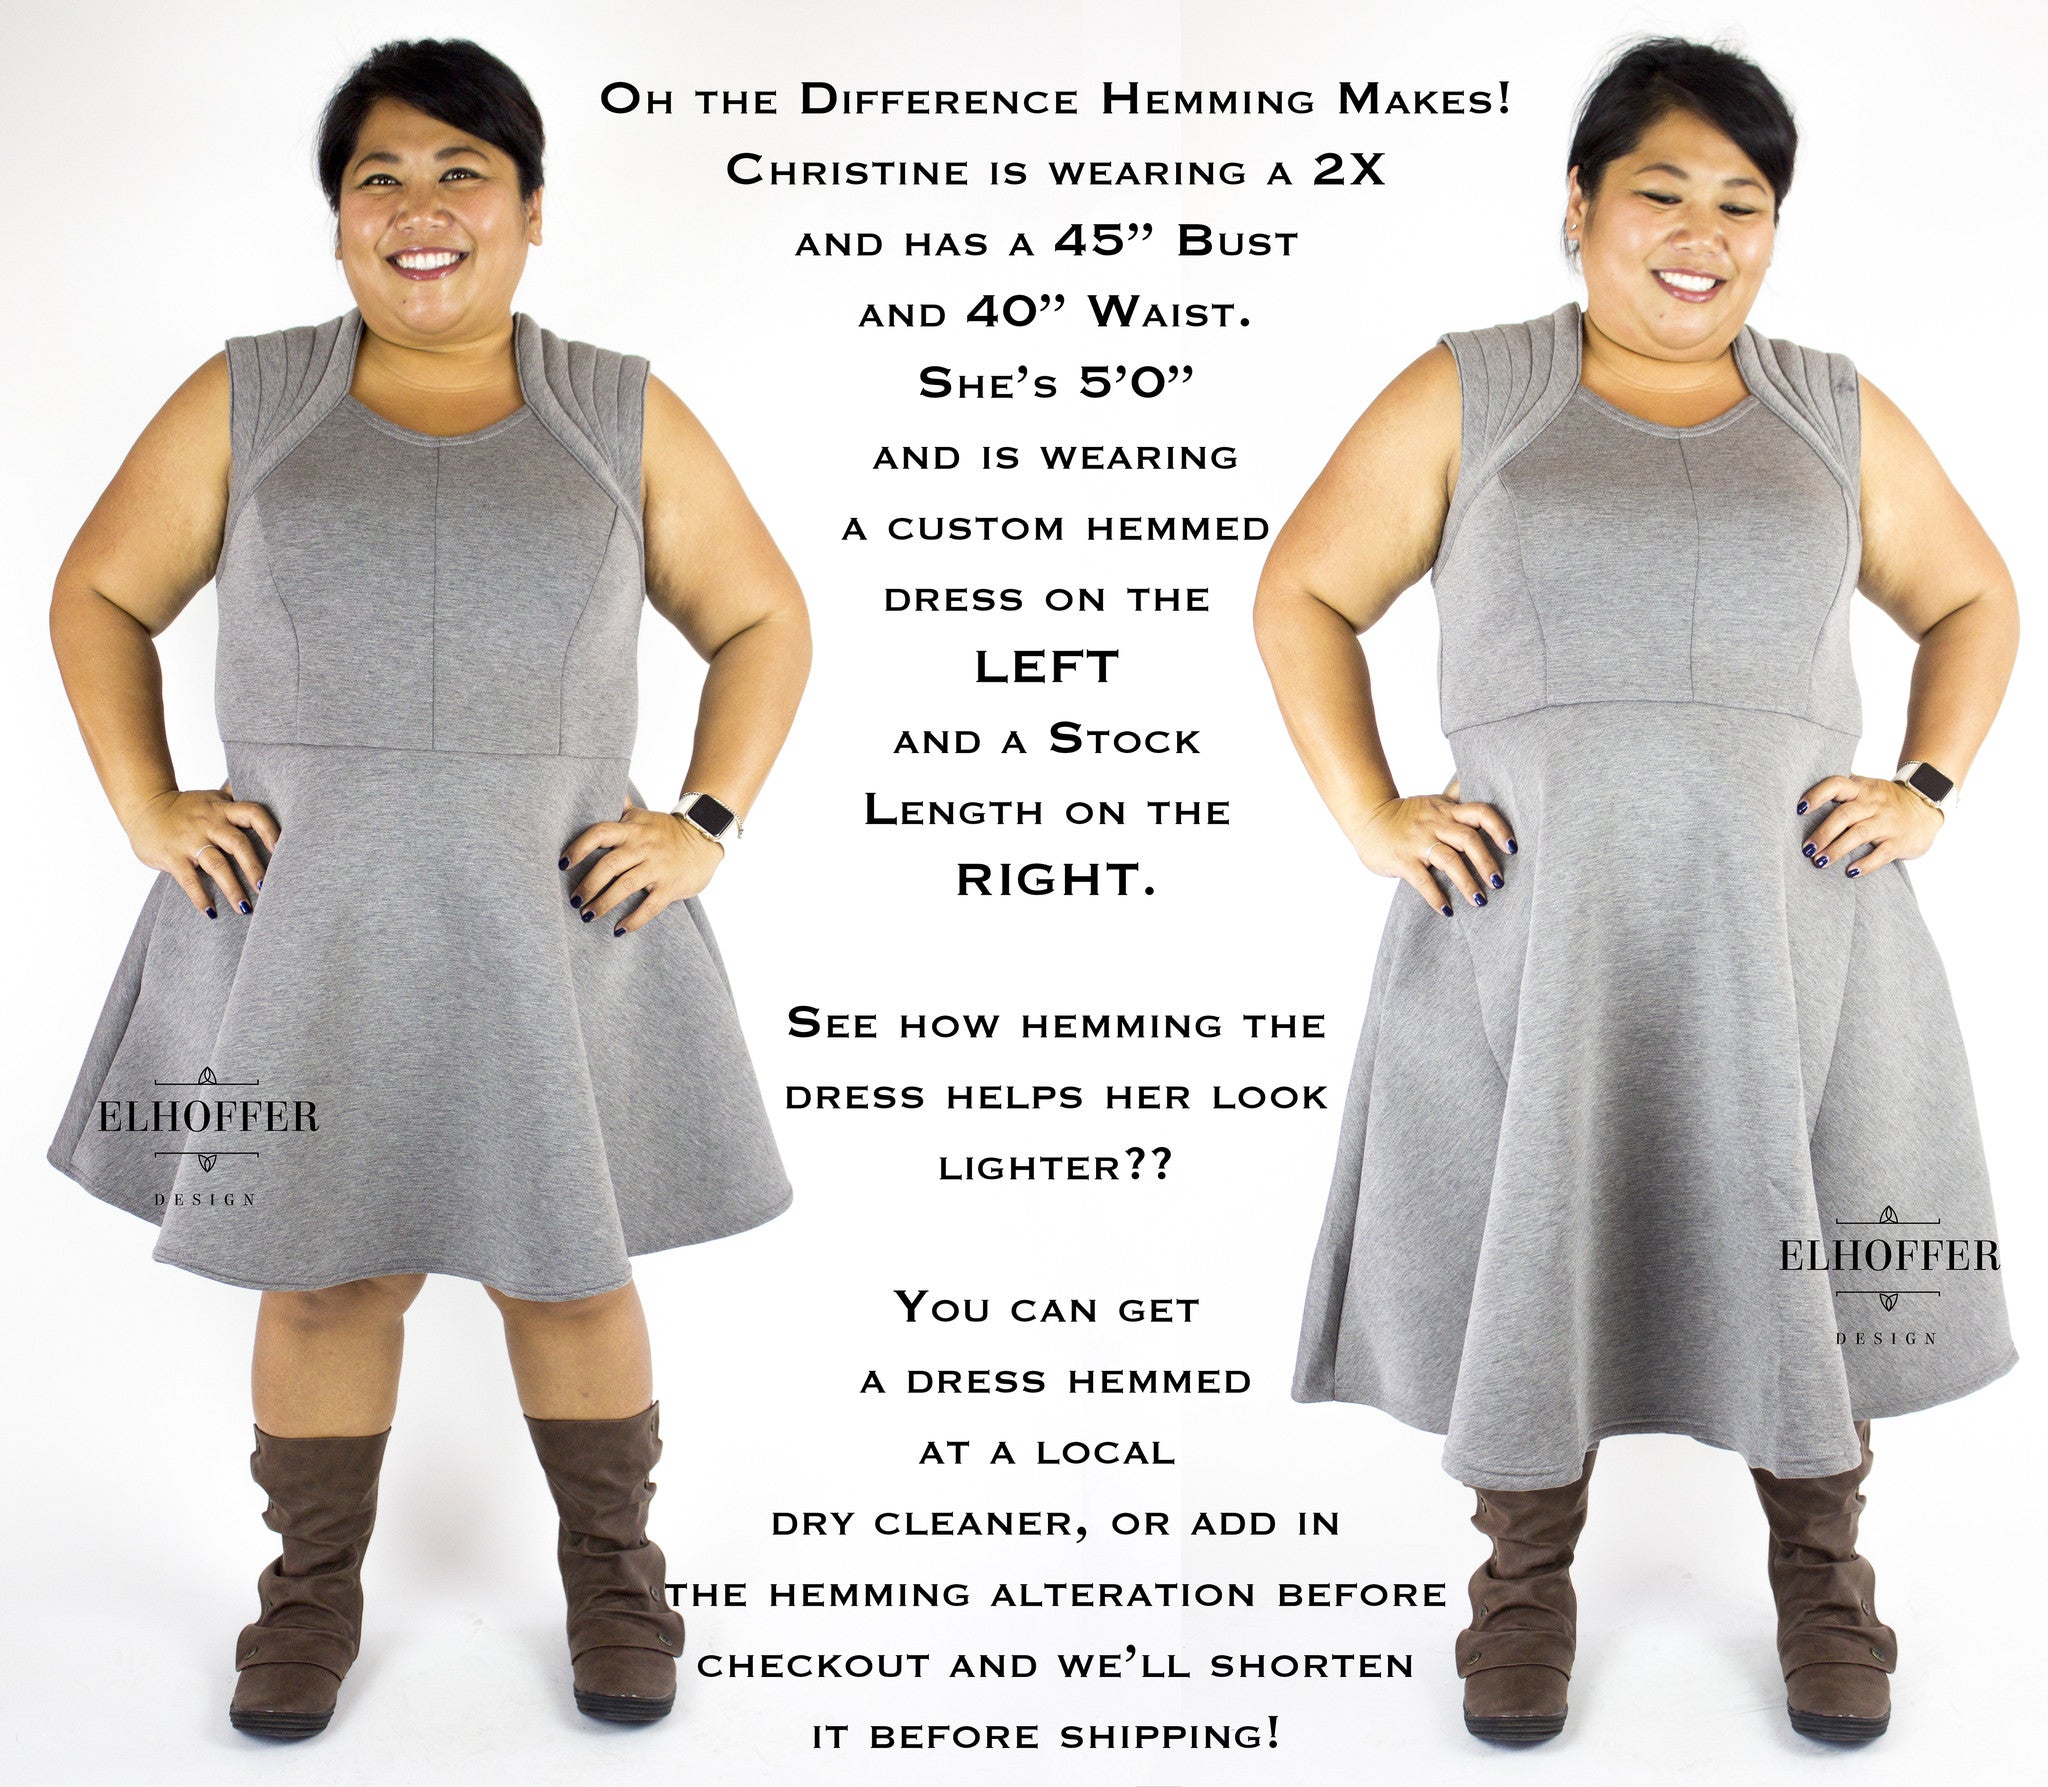 A comparison of a hemmed dress versus unhemmed dress.